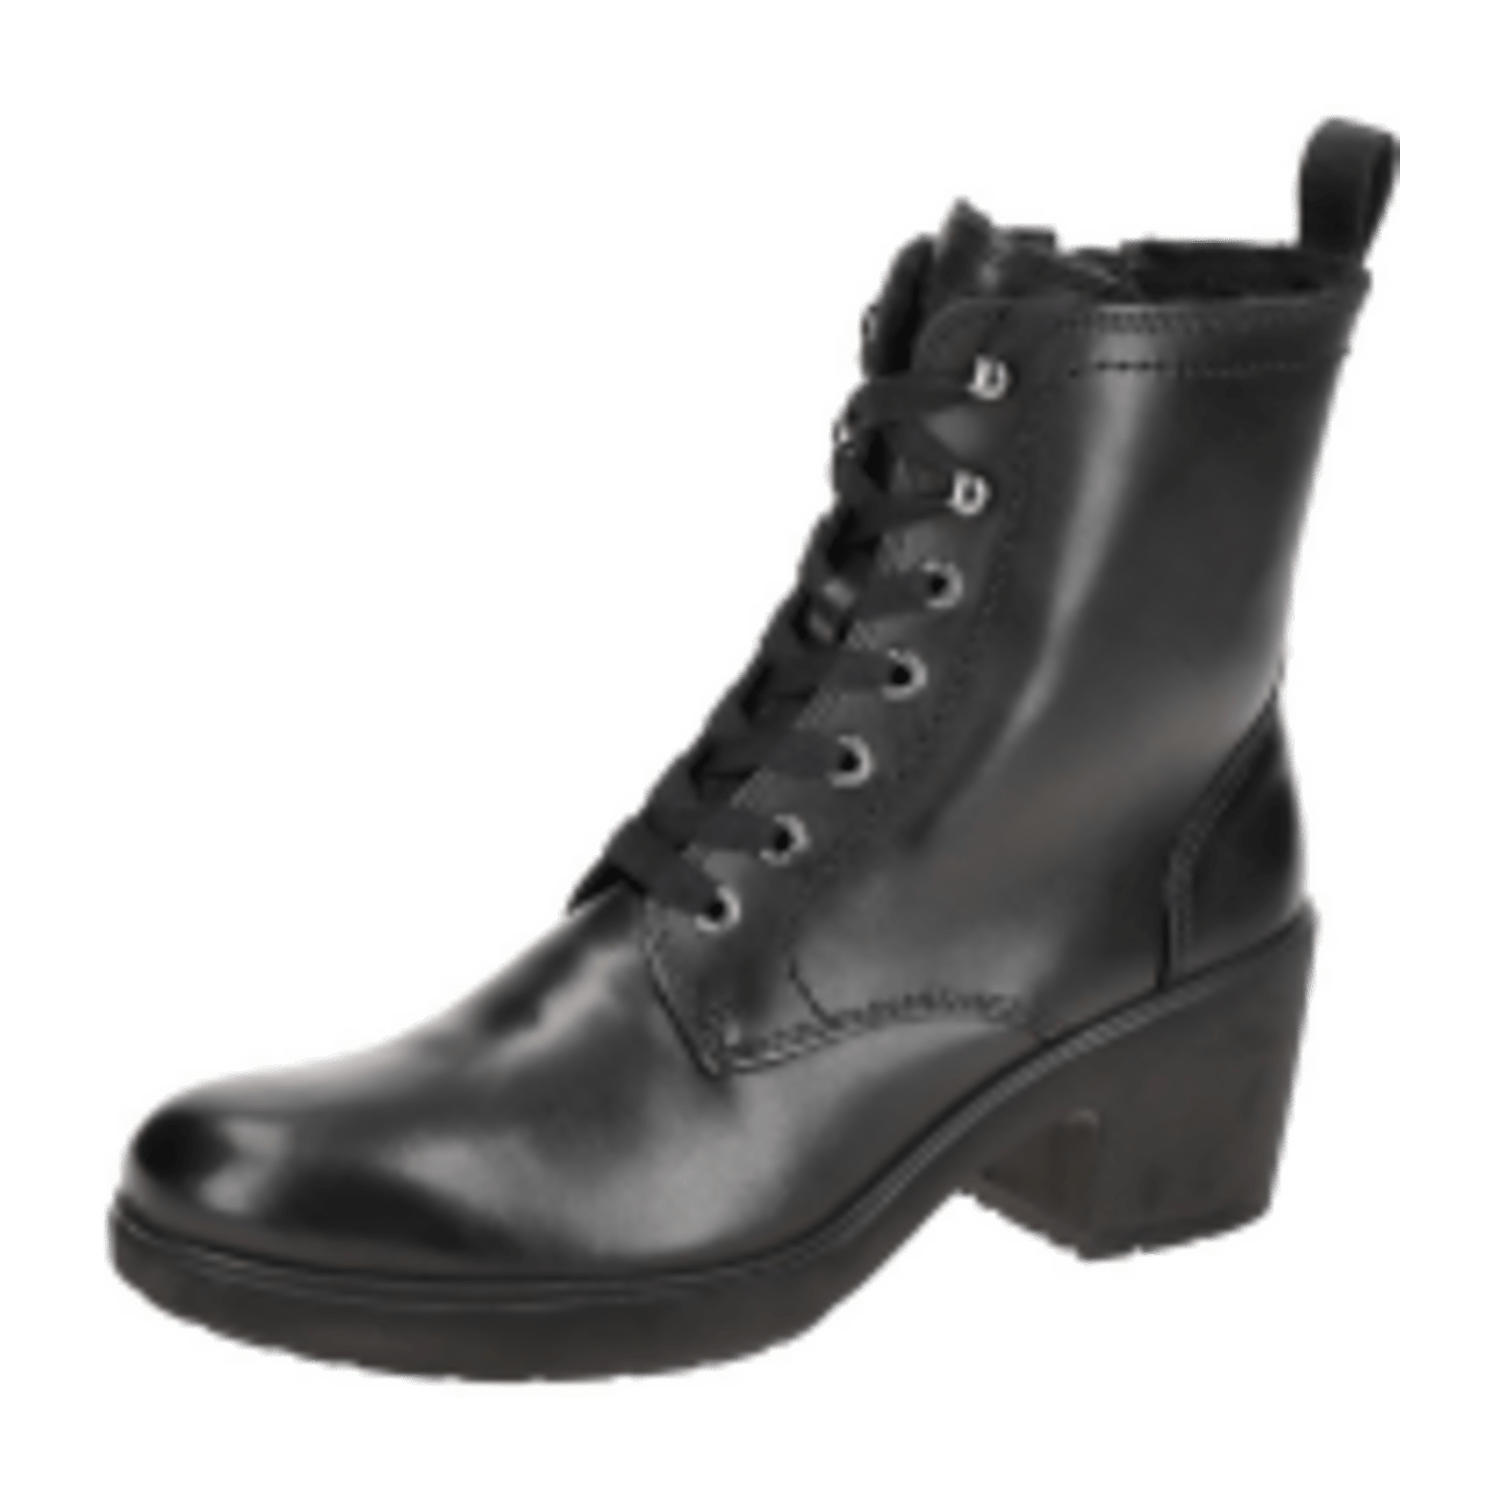 Ecco Metropole Zurich Stiefel Boots Warmfutter schwarz 222223